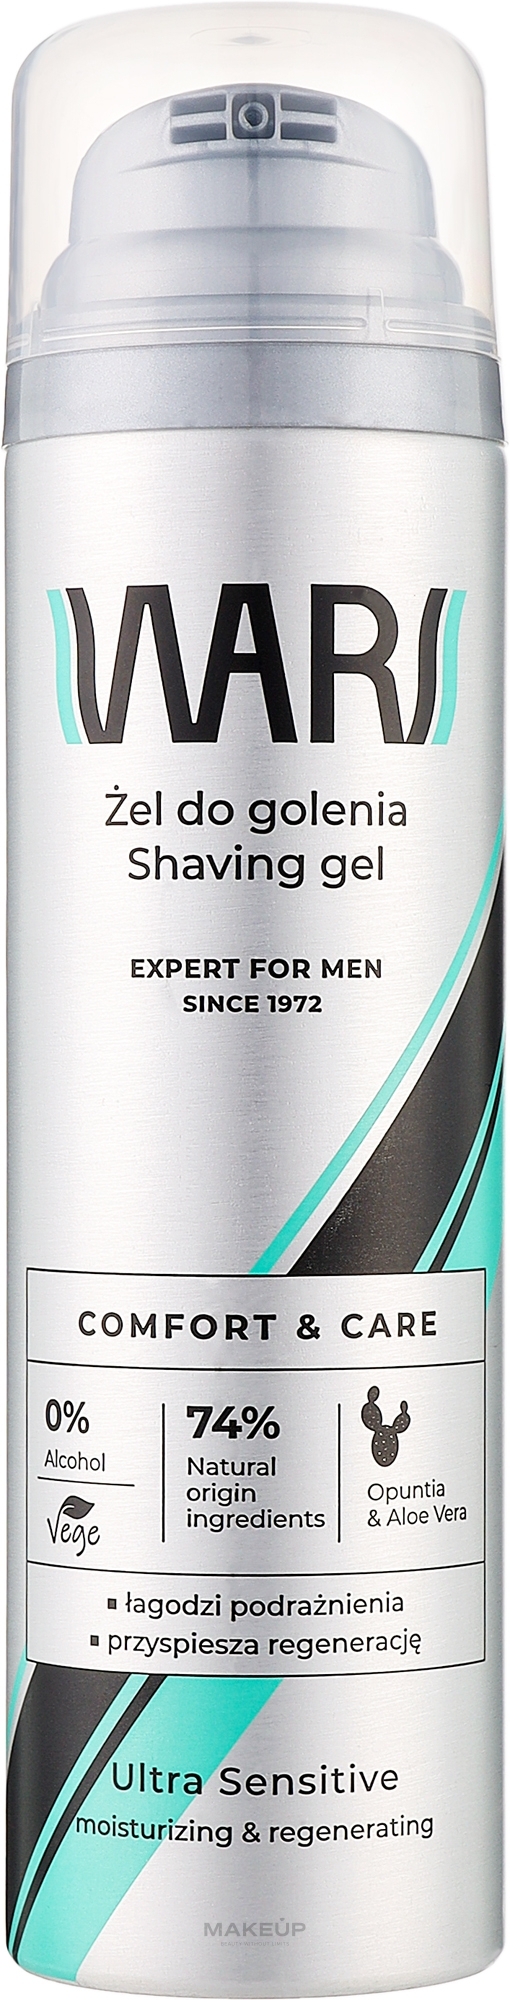 Żel do golenia dla mężczyzn Opuncja i aloes - Wars Expert For Men  — Zdjęcie 200 ml